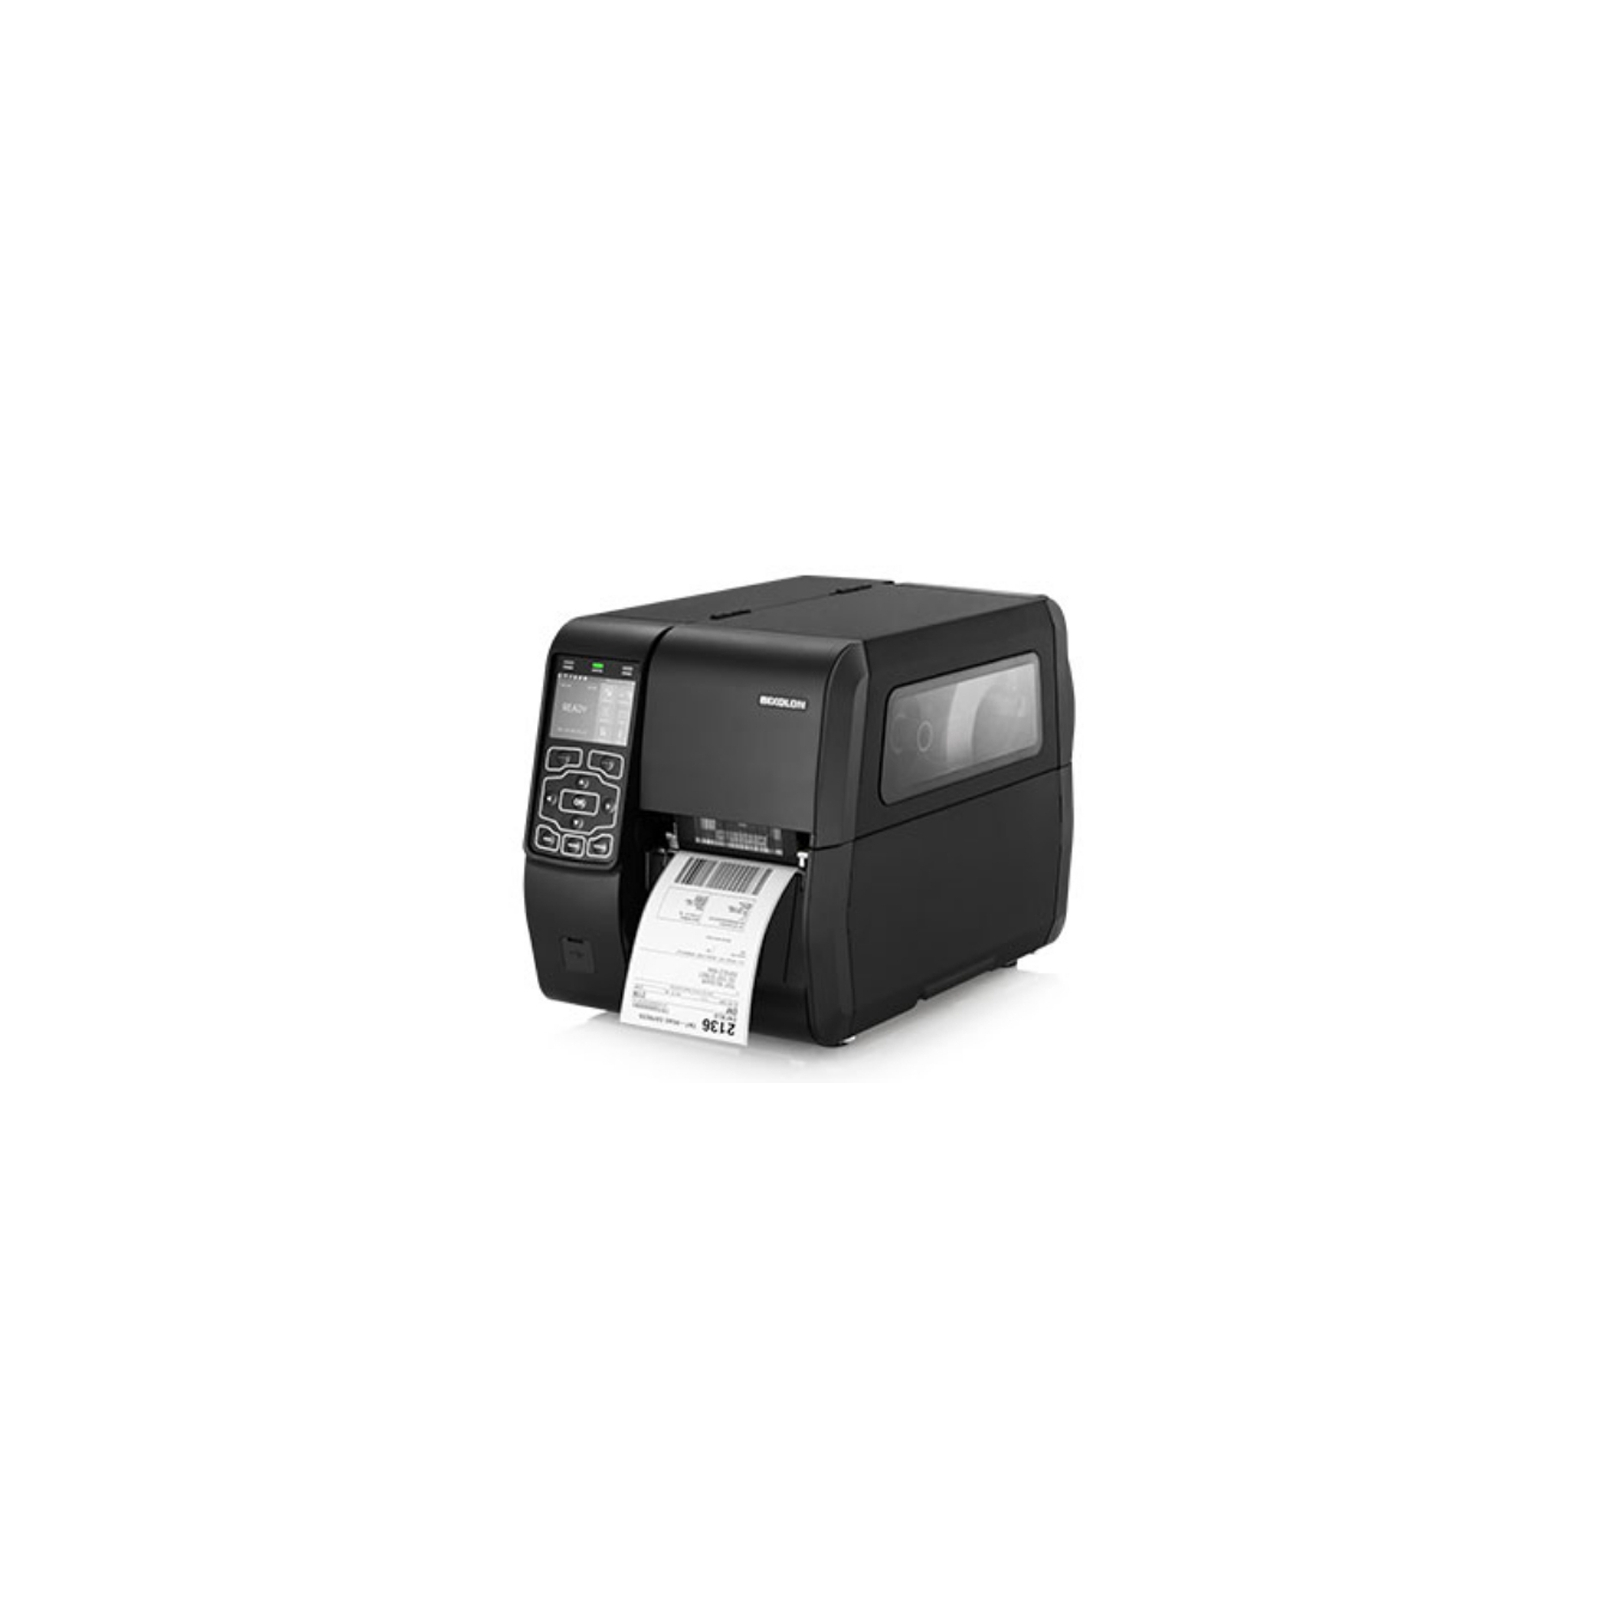 Принтер етикеток Bixolon XT5-43D9S 300dpi USB, RS323, Ethernet, отделитель, смотчик (17251) зображення 2